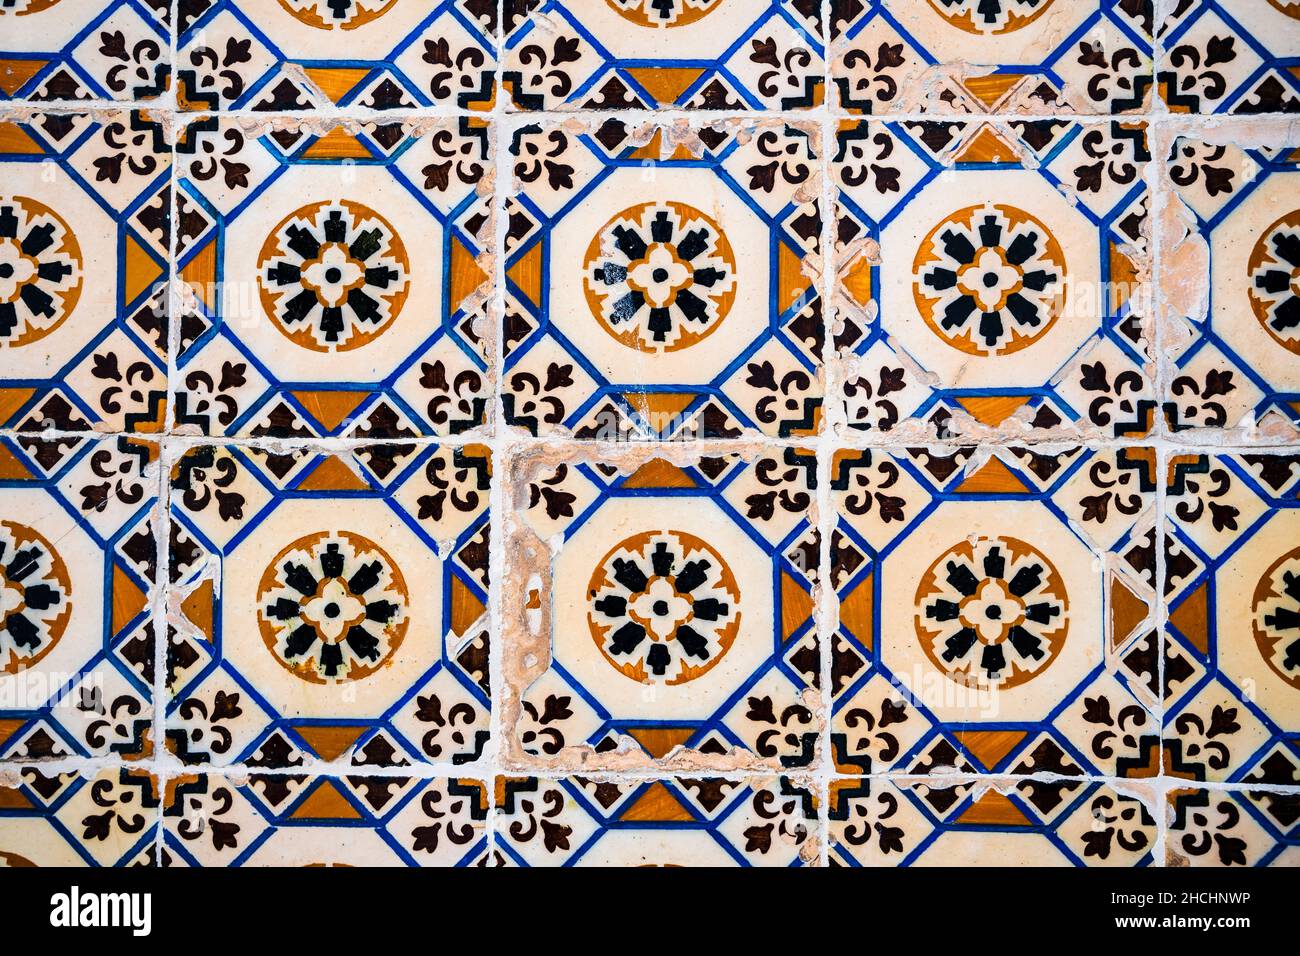 Vieux carreaux portugais appelé azulejo trouvé sur le mur à Sesimbra, Portugal Banque D'Images